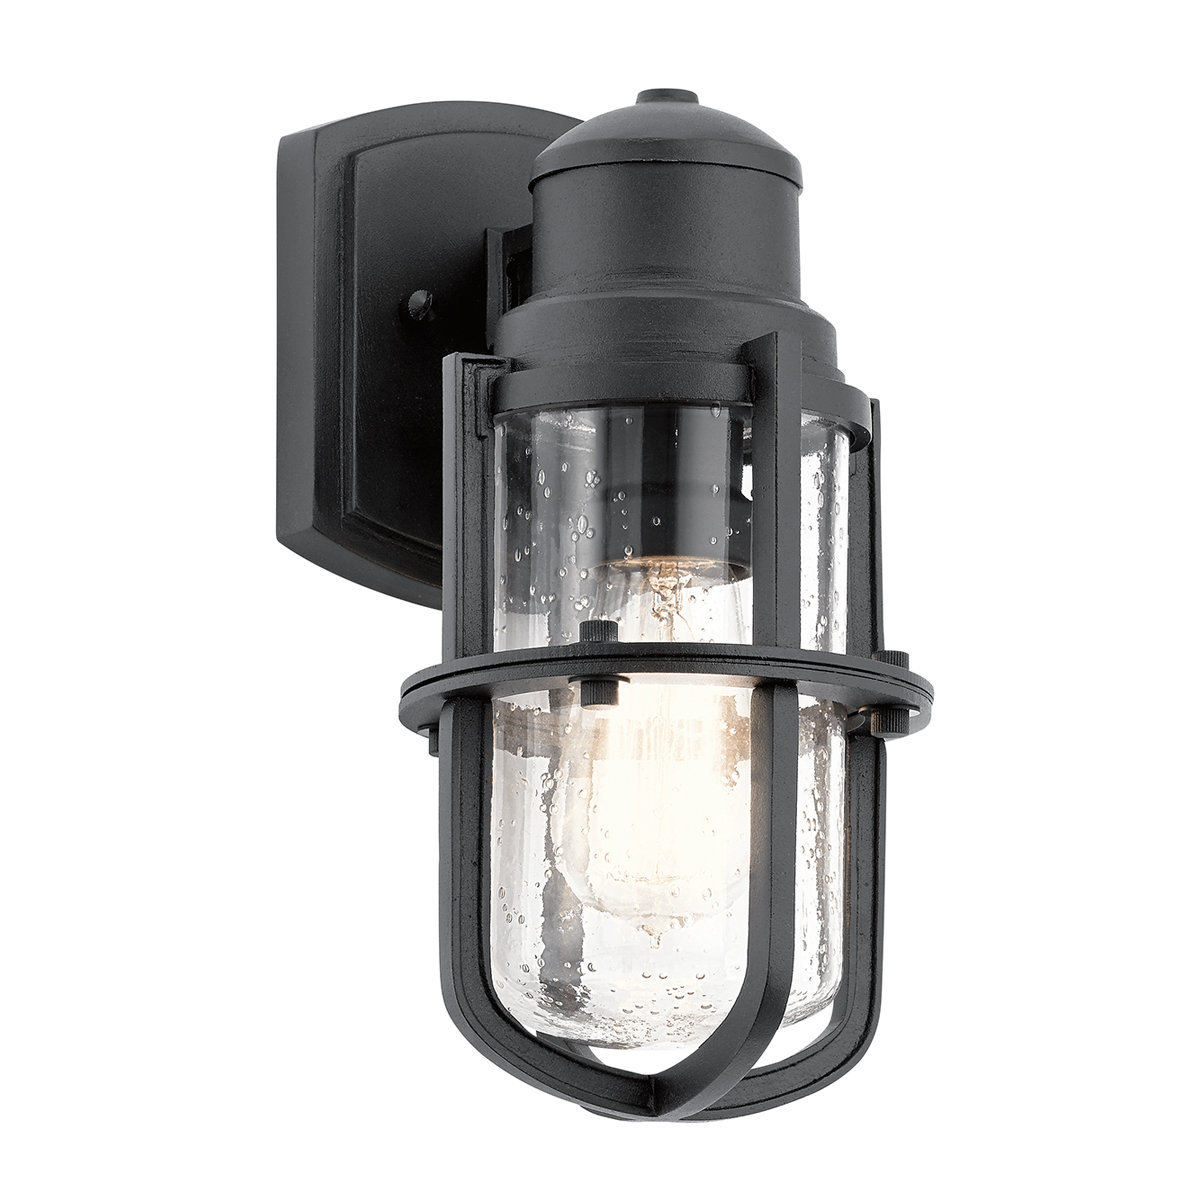 Zdjęcia - Naświetlacz / lampka Kichler Lampa zewnętrzna naścienna KL-SURI-S  outdoor szklana czarna 